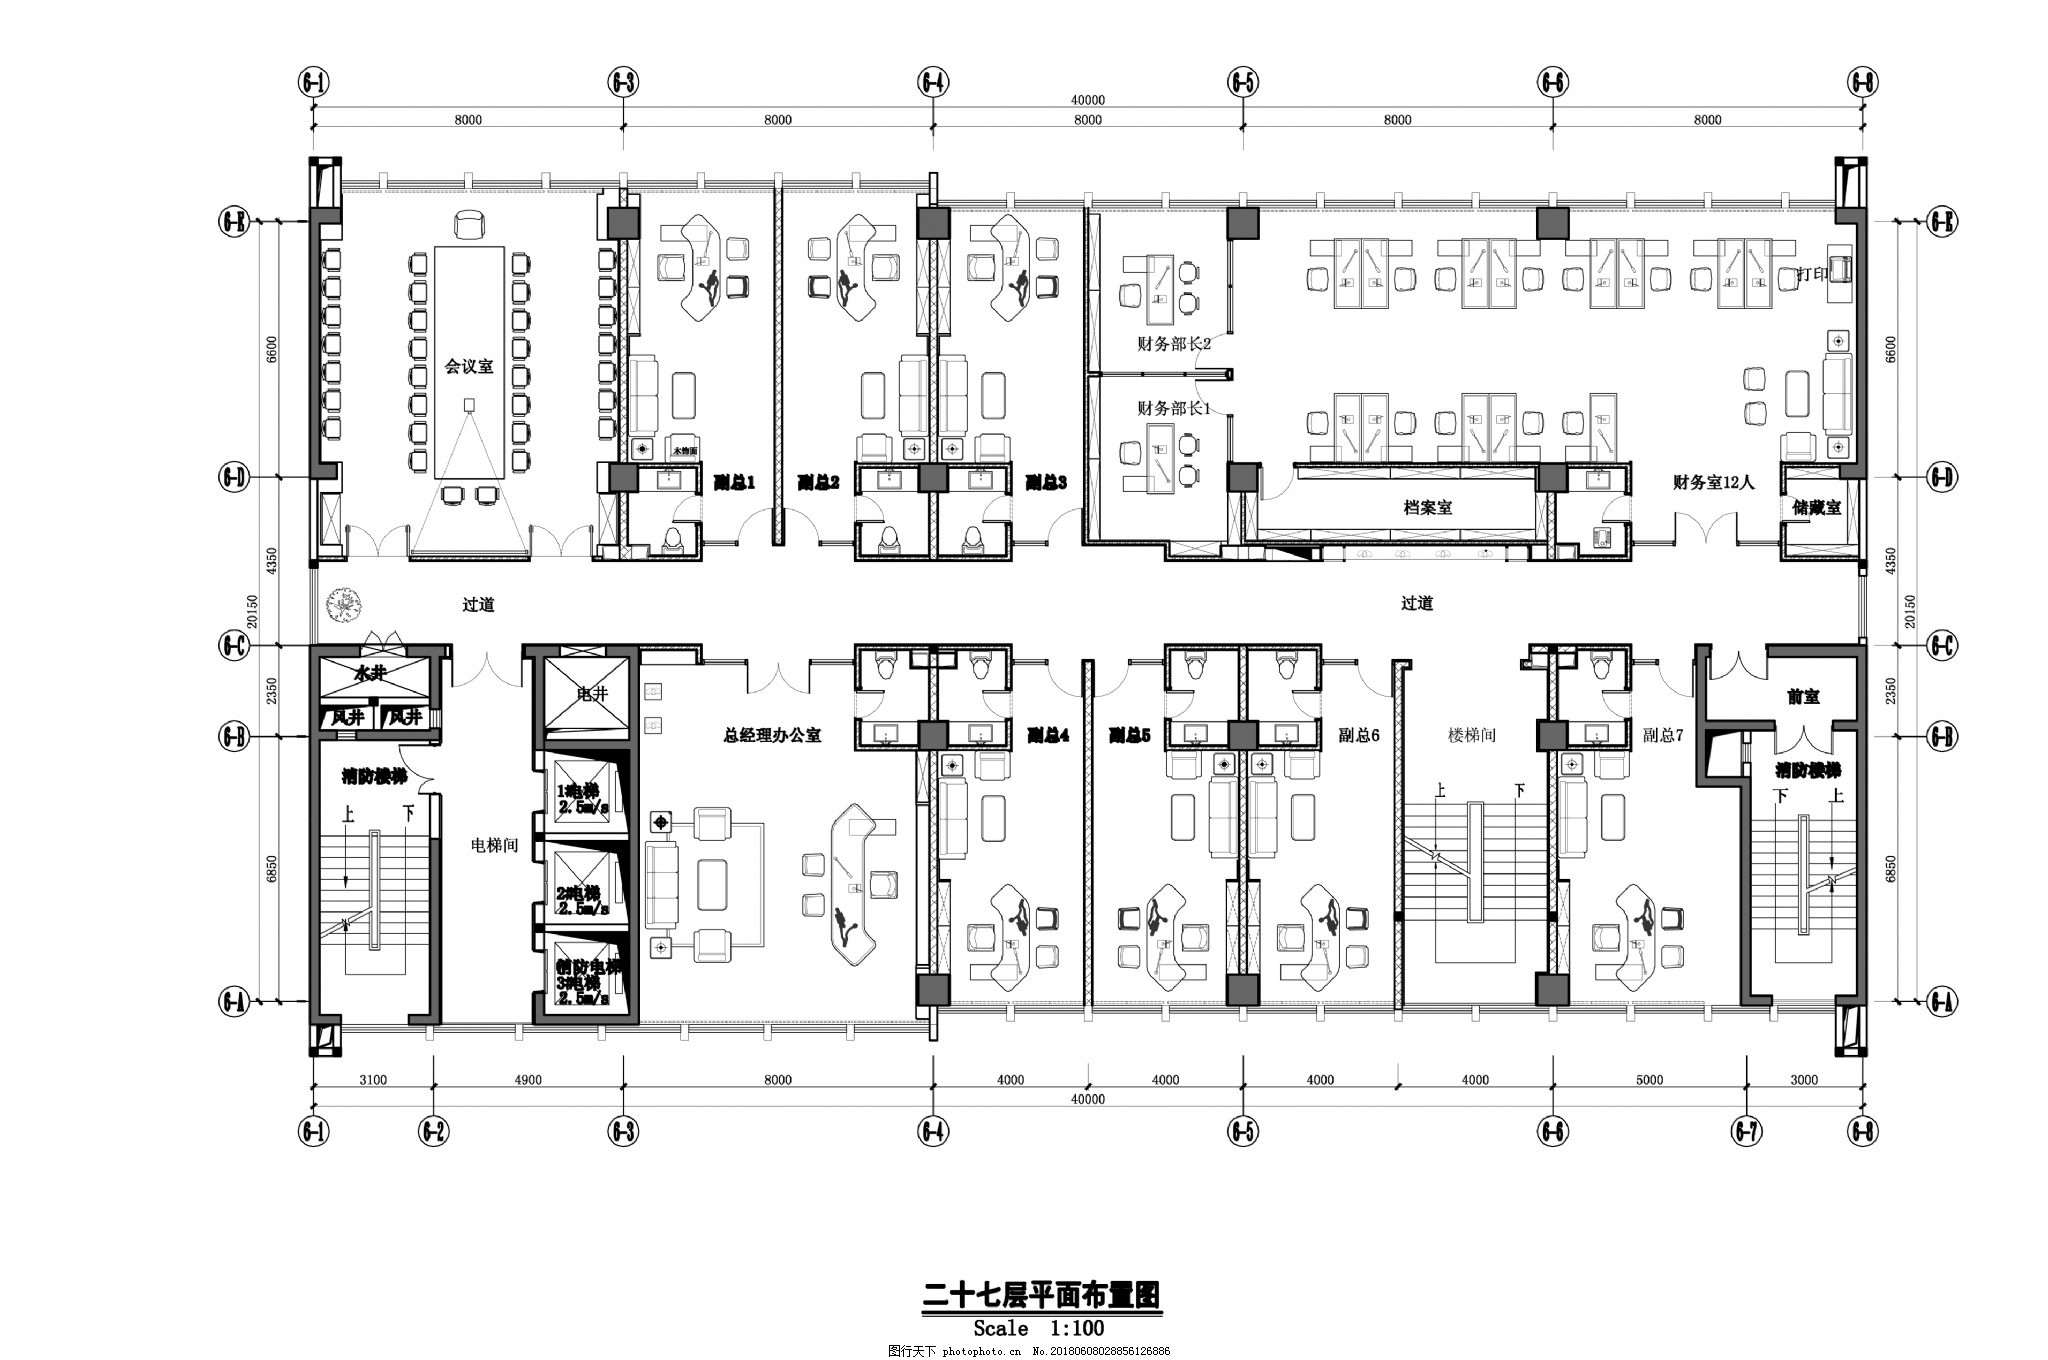 8层简单小型办公楼建筑平面图-建筑户型图-筑龙建筑设计论坛